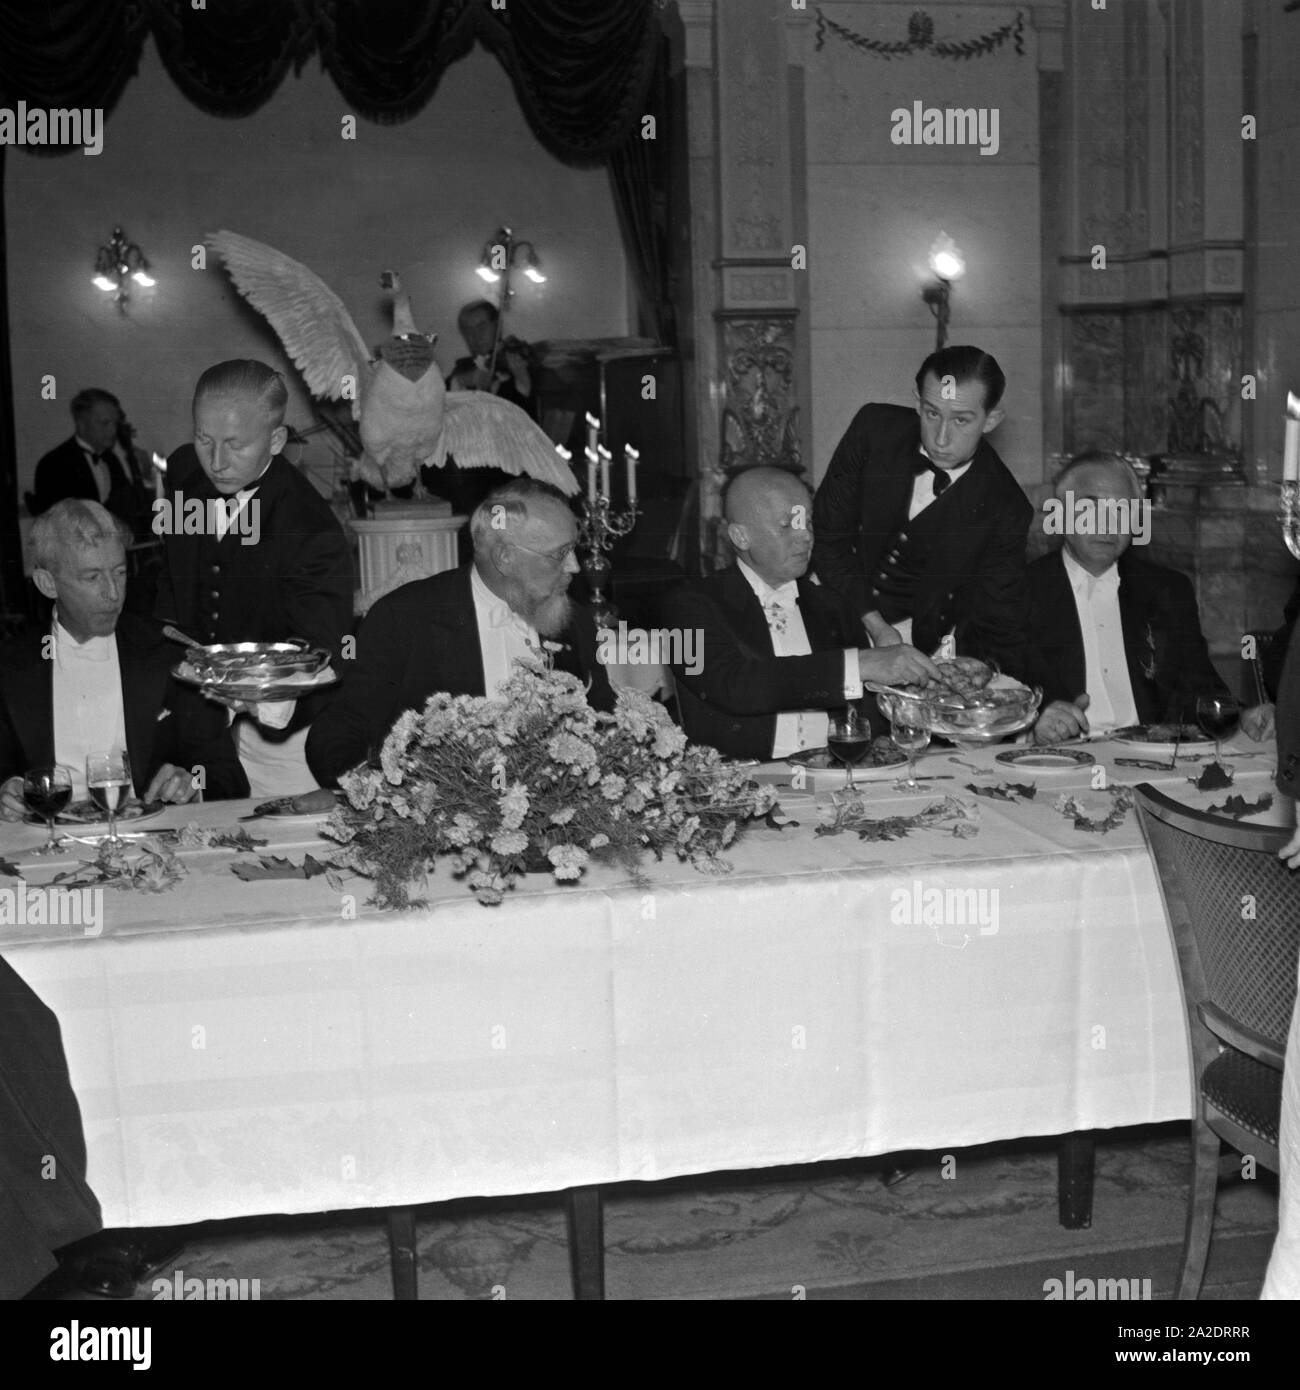 Der Deutsch Niederländische Club lädt zum Martinsgans Essen ins Hotel Bristol, Deutschland 1930er Jahre. The German Dutch Club invites to traditional goose at Martinmas supper at Hotel Bristol, Berlin, Germany 1930s. Stock Photo